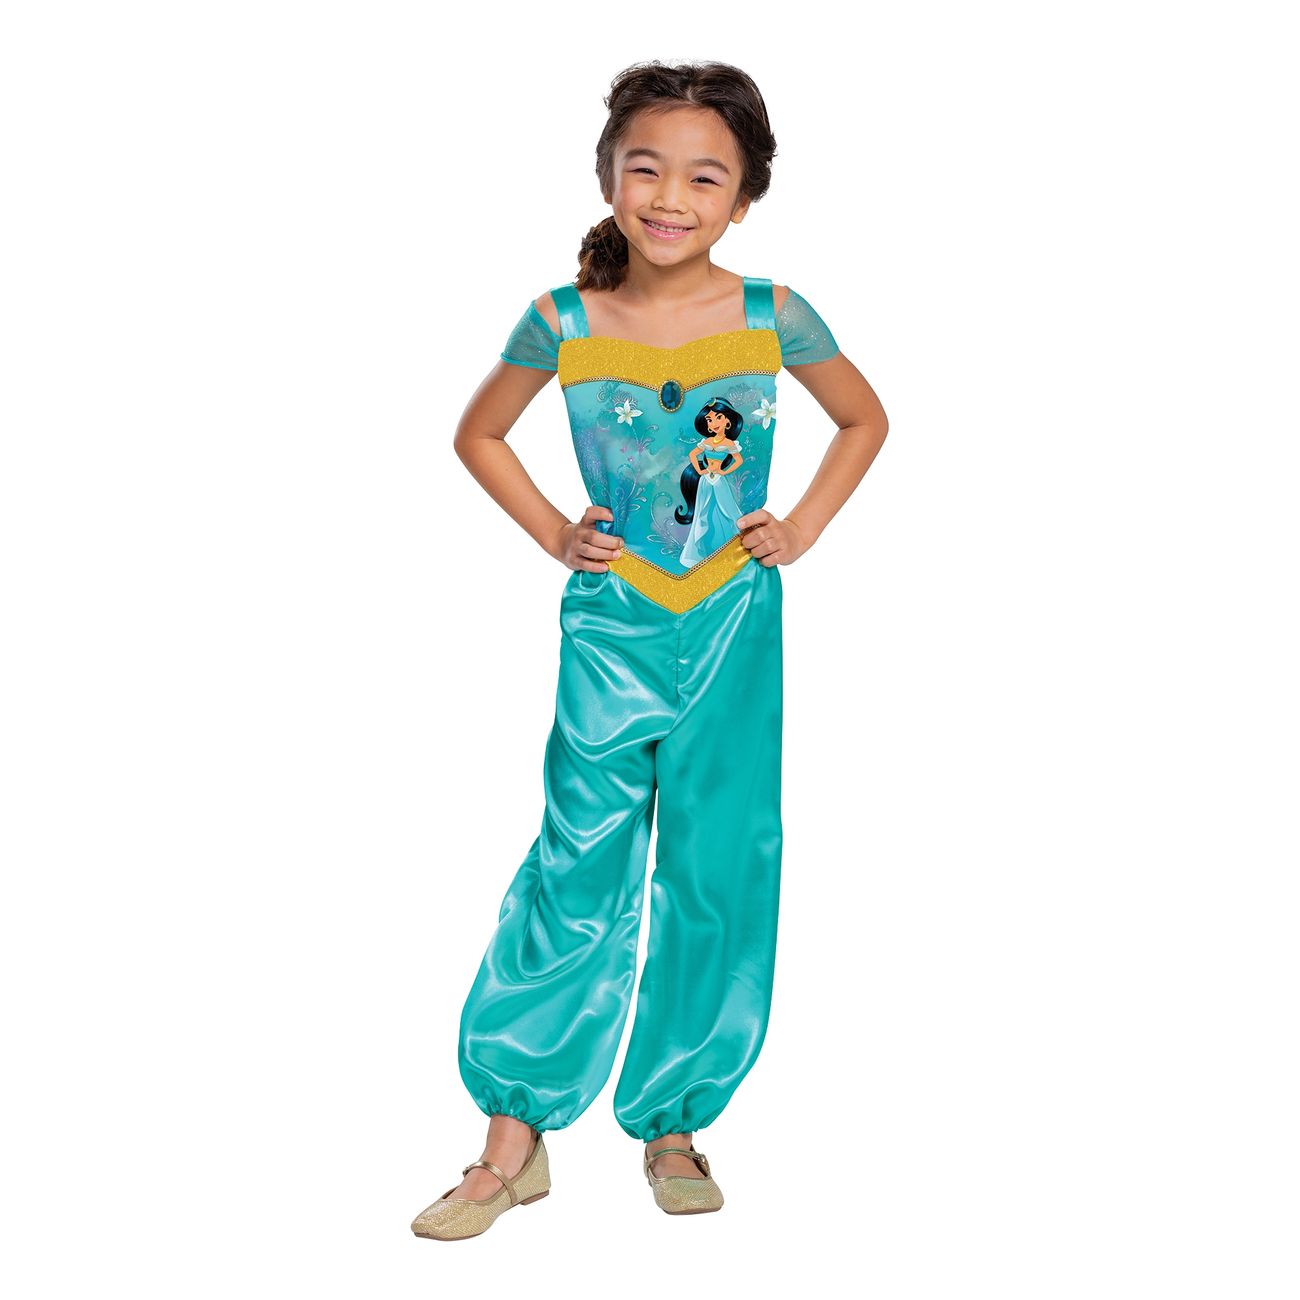 Disney Jasmin kostume til børn - Aladdin kostume til børn